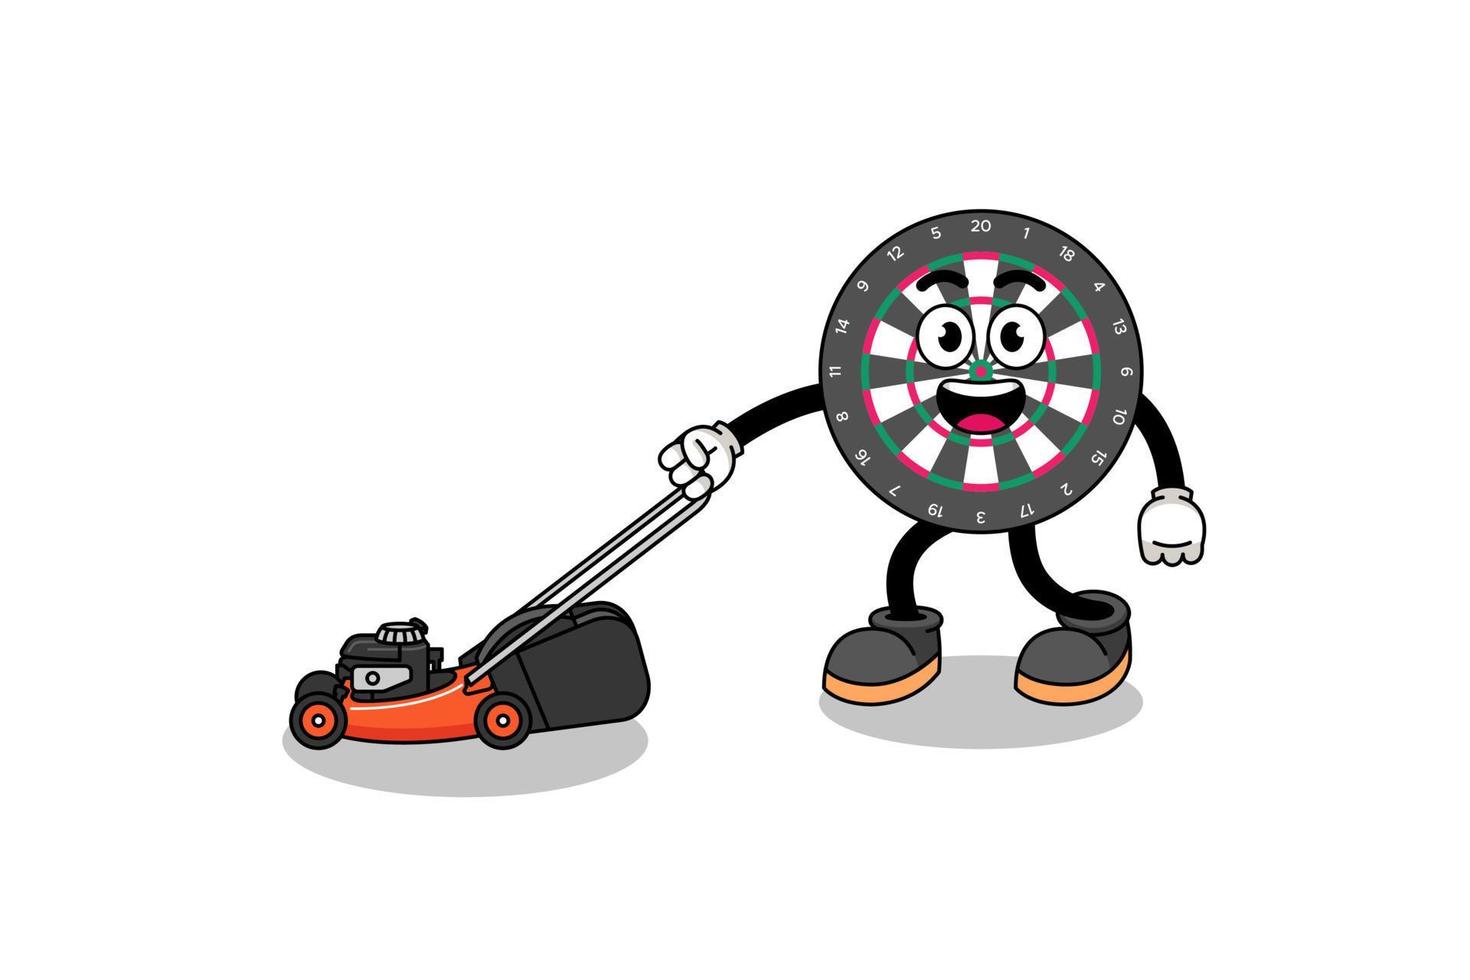 dart board illustration cartoon holding lawn mower vector